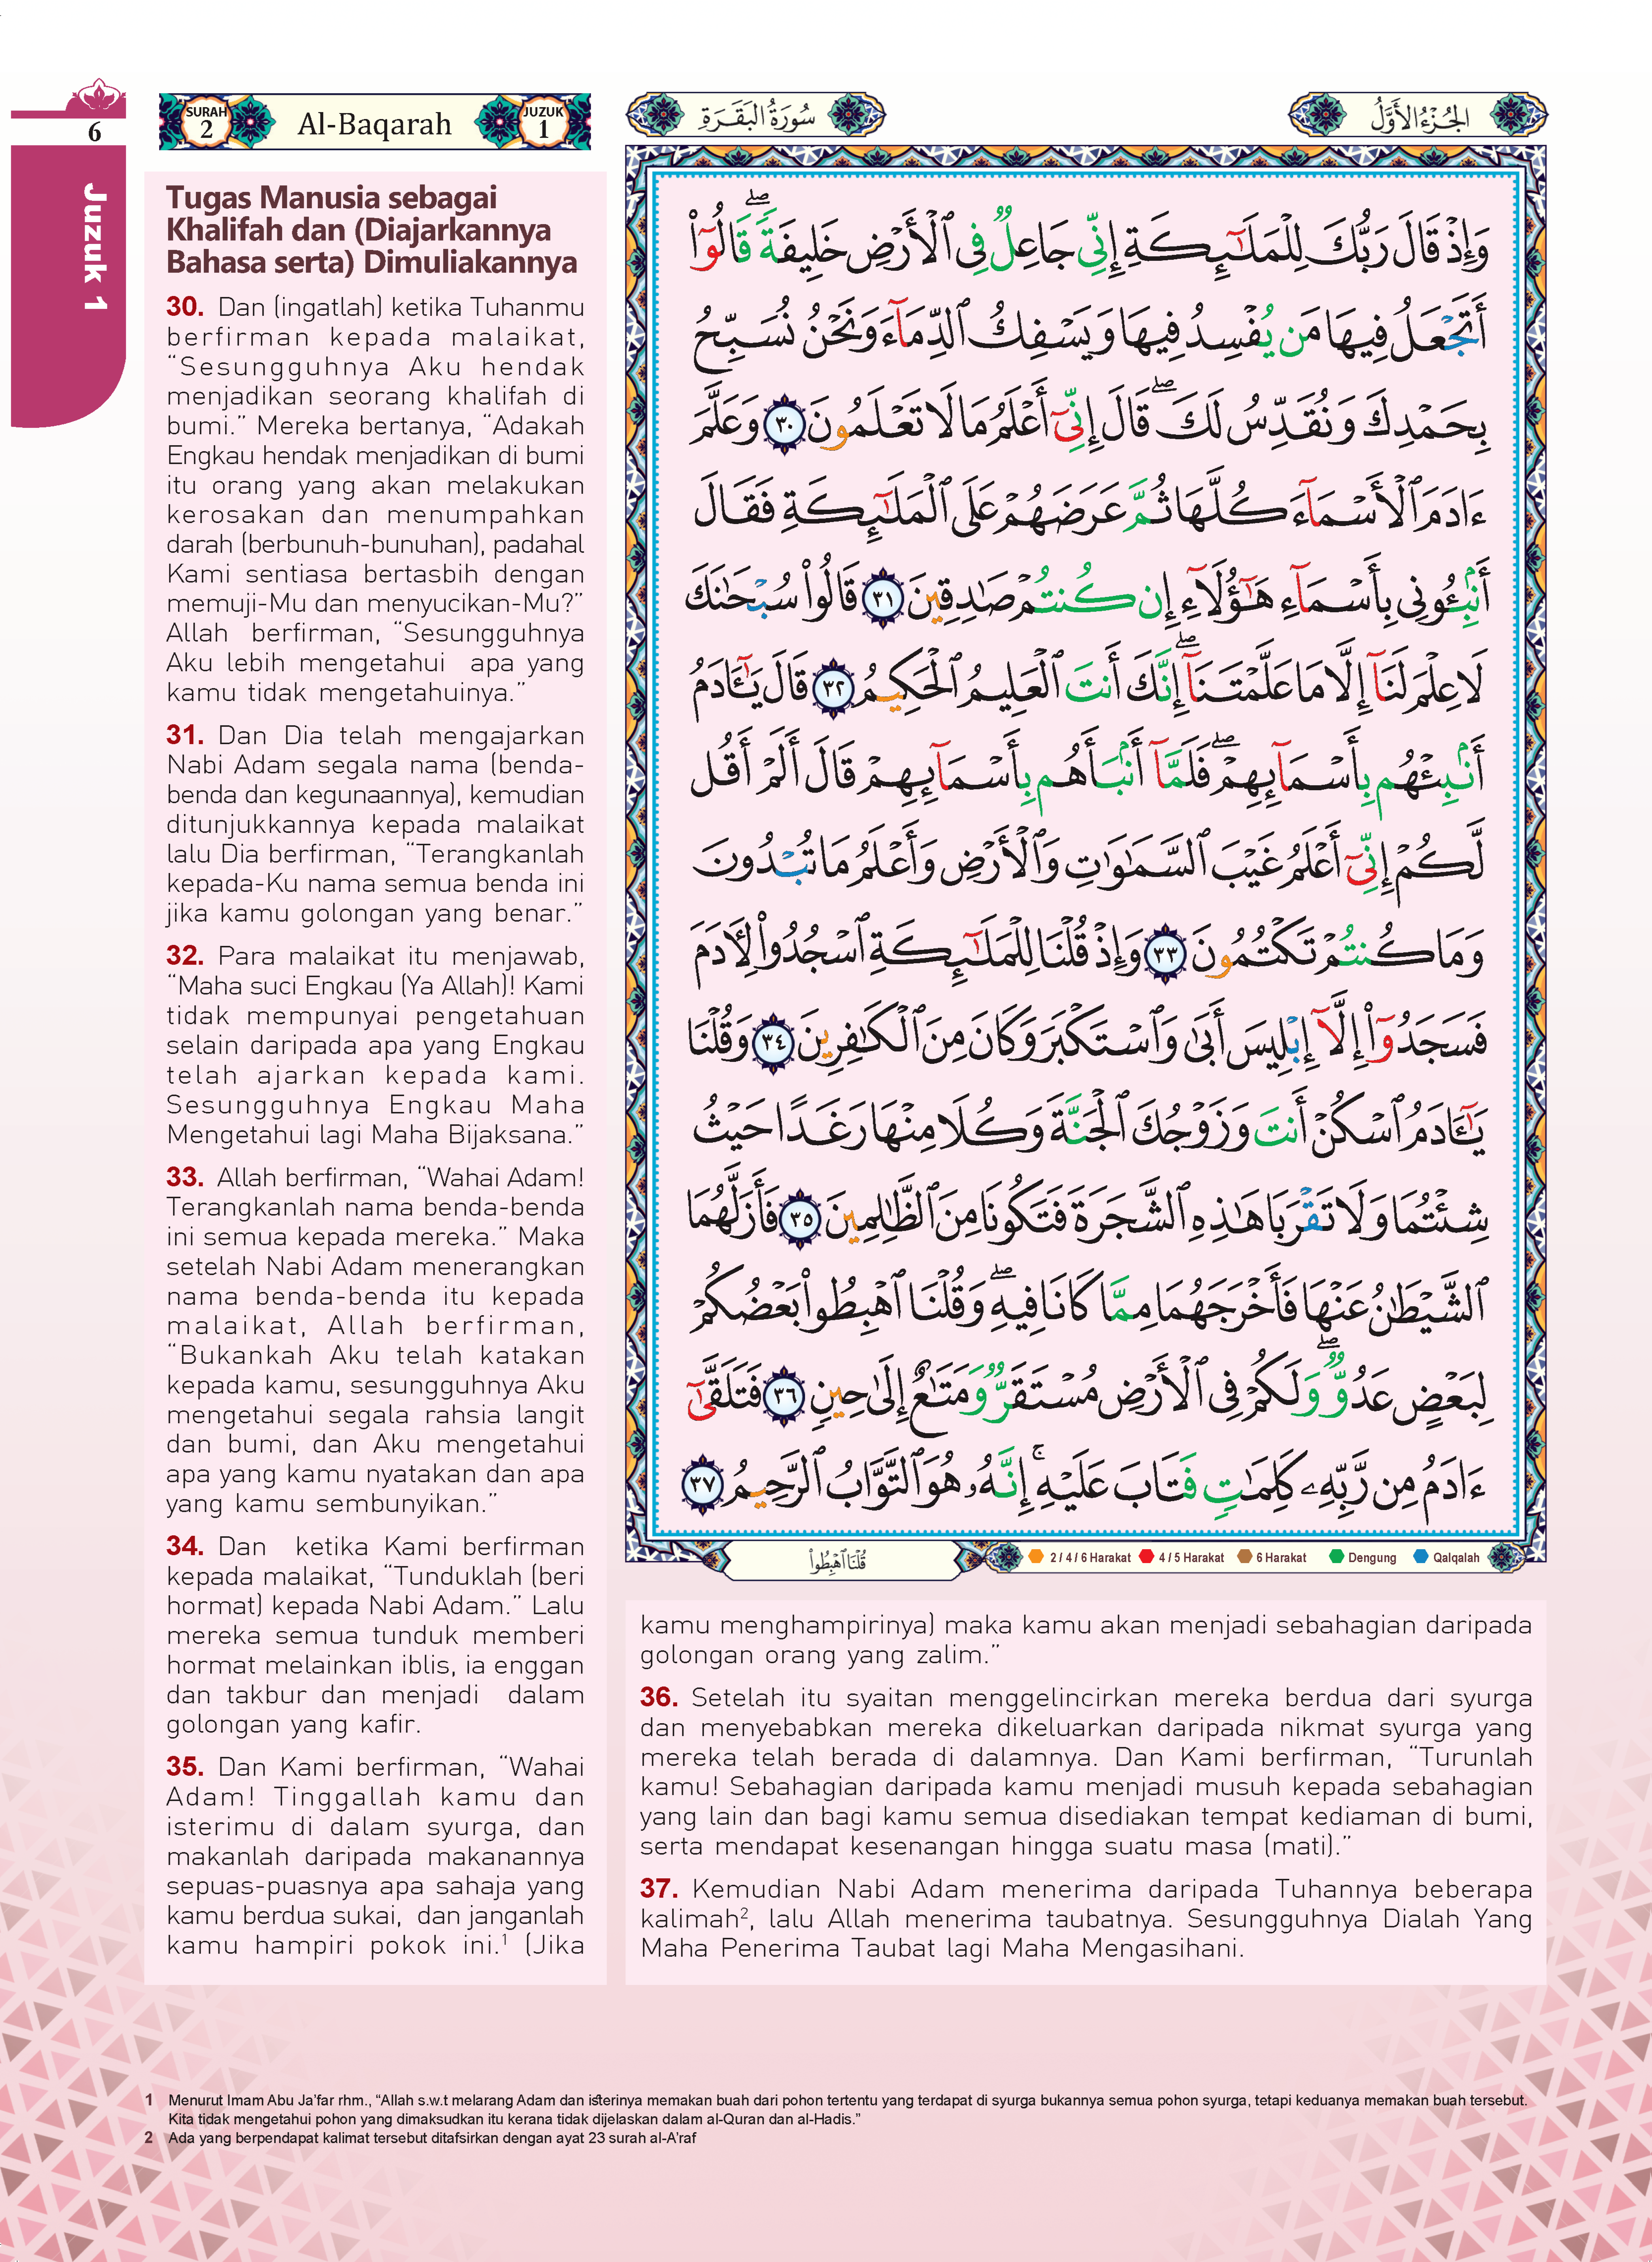 Al-Quran Al-Karim Tajwid & Terjemahan Tematik Dengan Panduan Warna Bertema - (TBAQ1040)